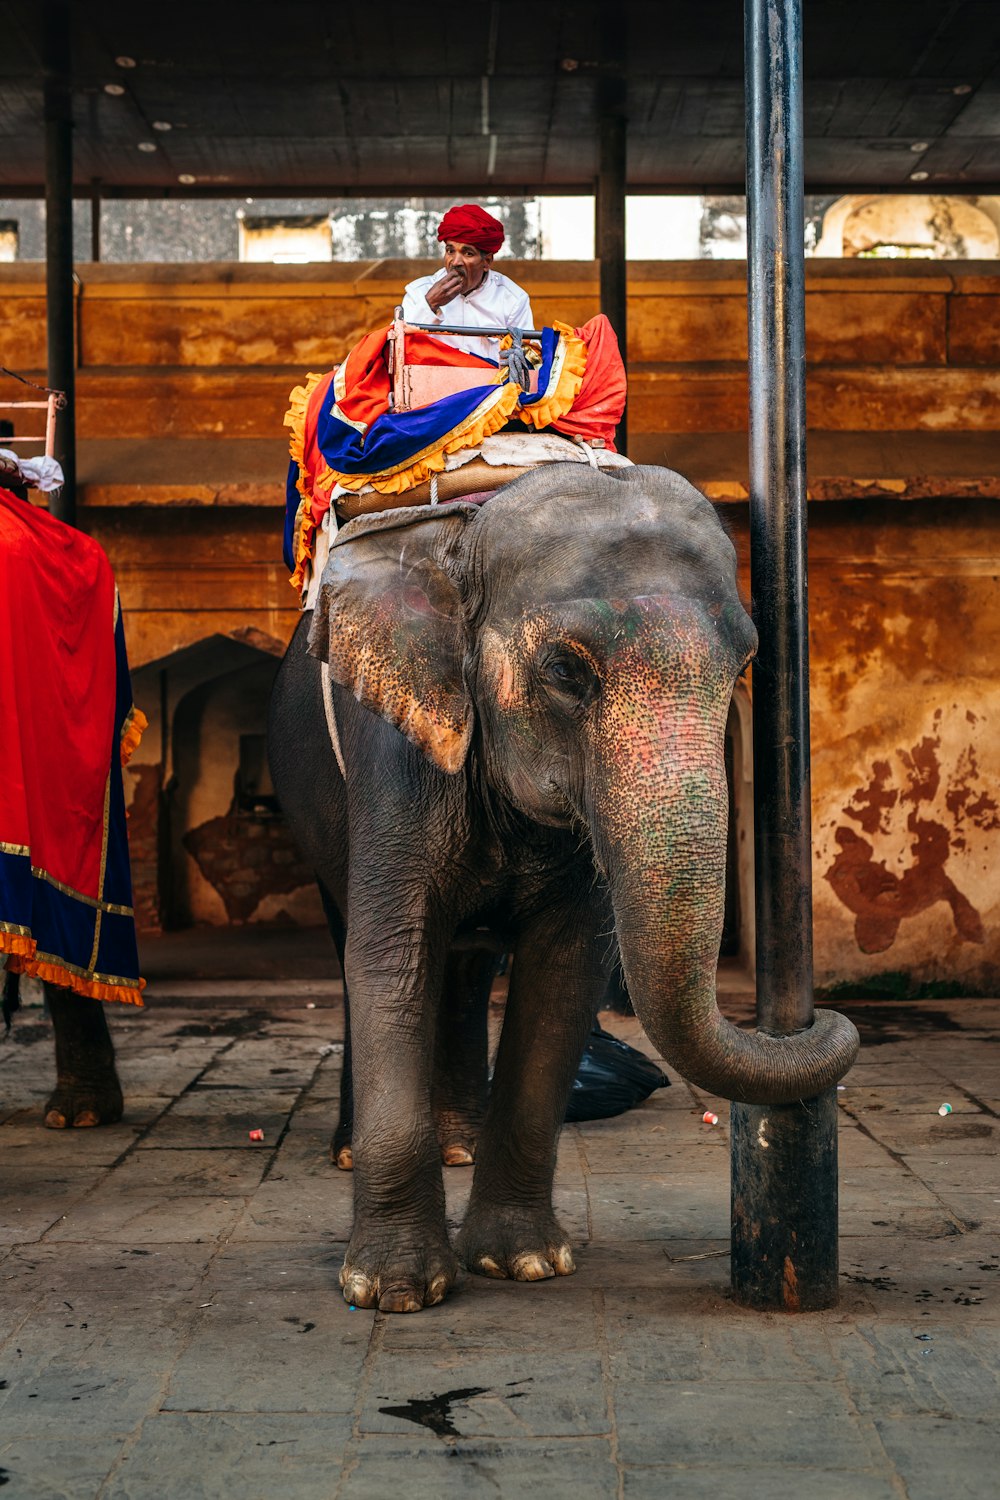 Foto hombre con camisa roja y blanca montando elefante – Imagen Jaipur  gratis en Unsplash